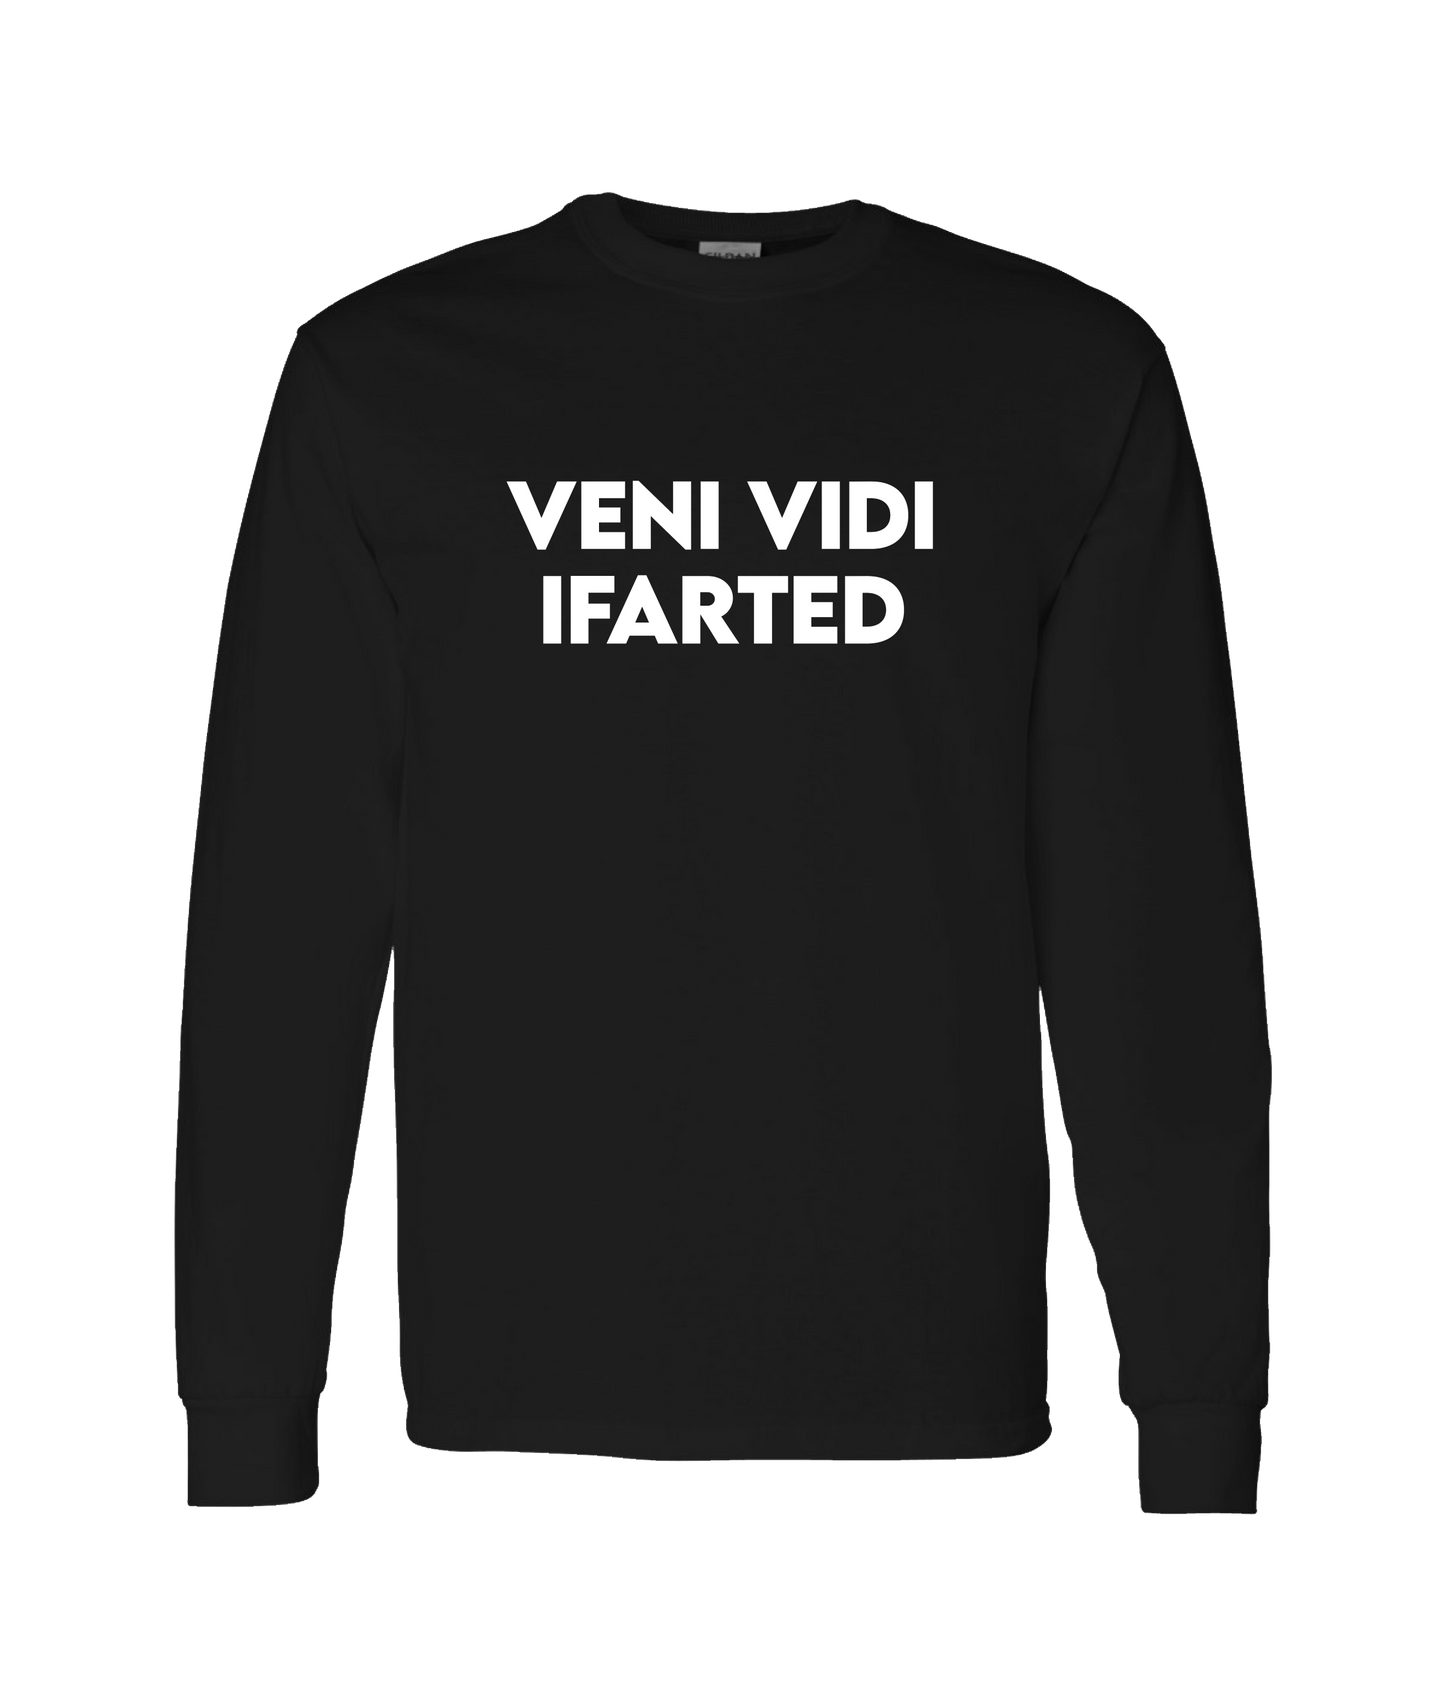 iFart - VENI VIDI - Black Long Sleeve T